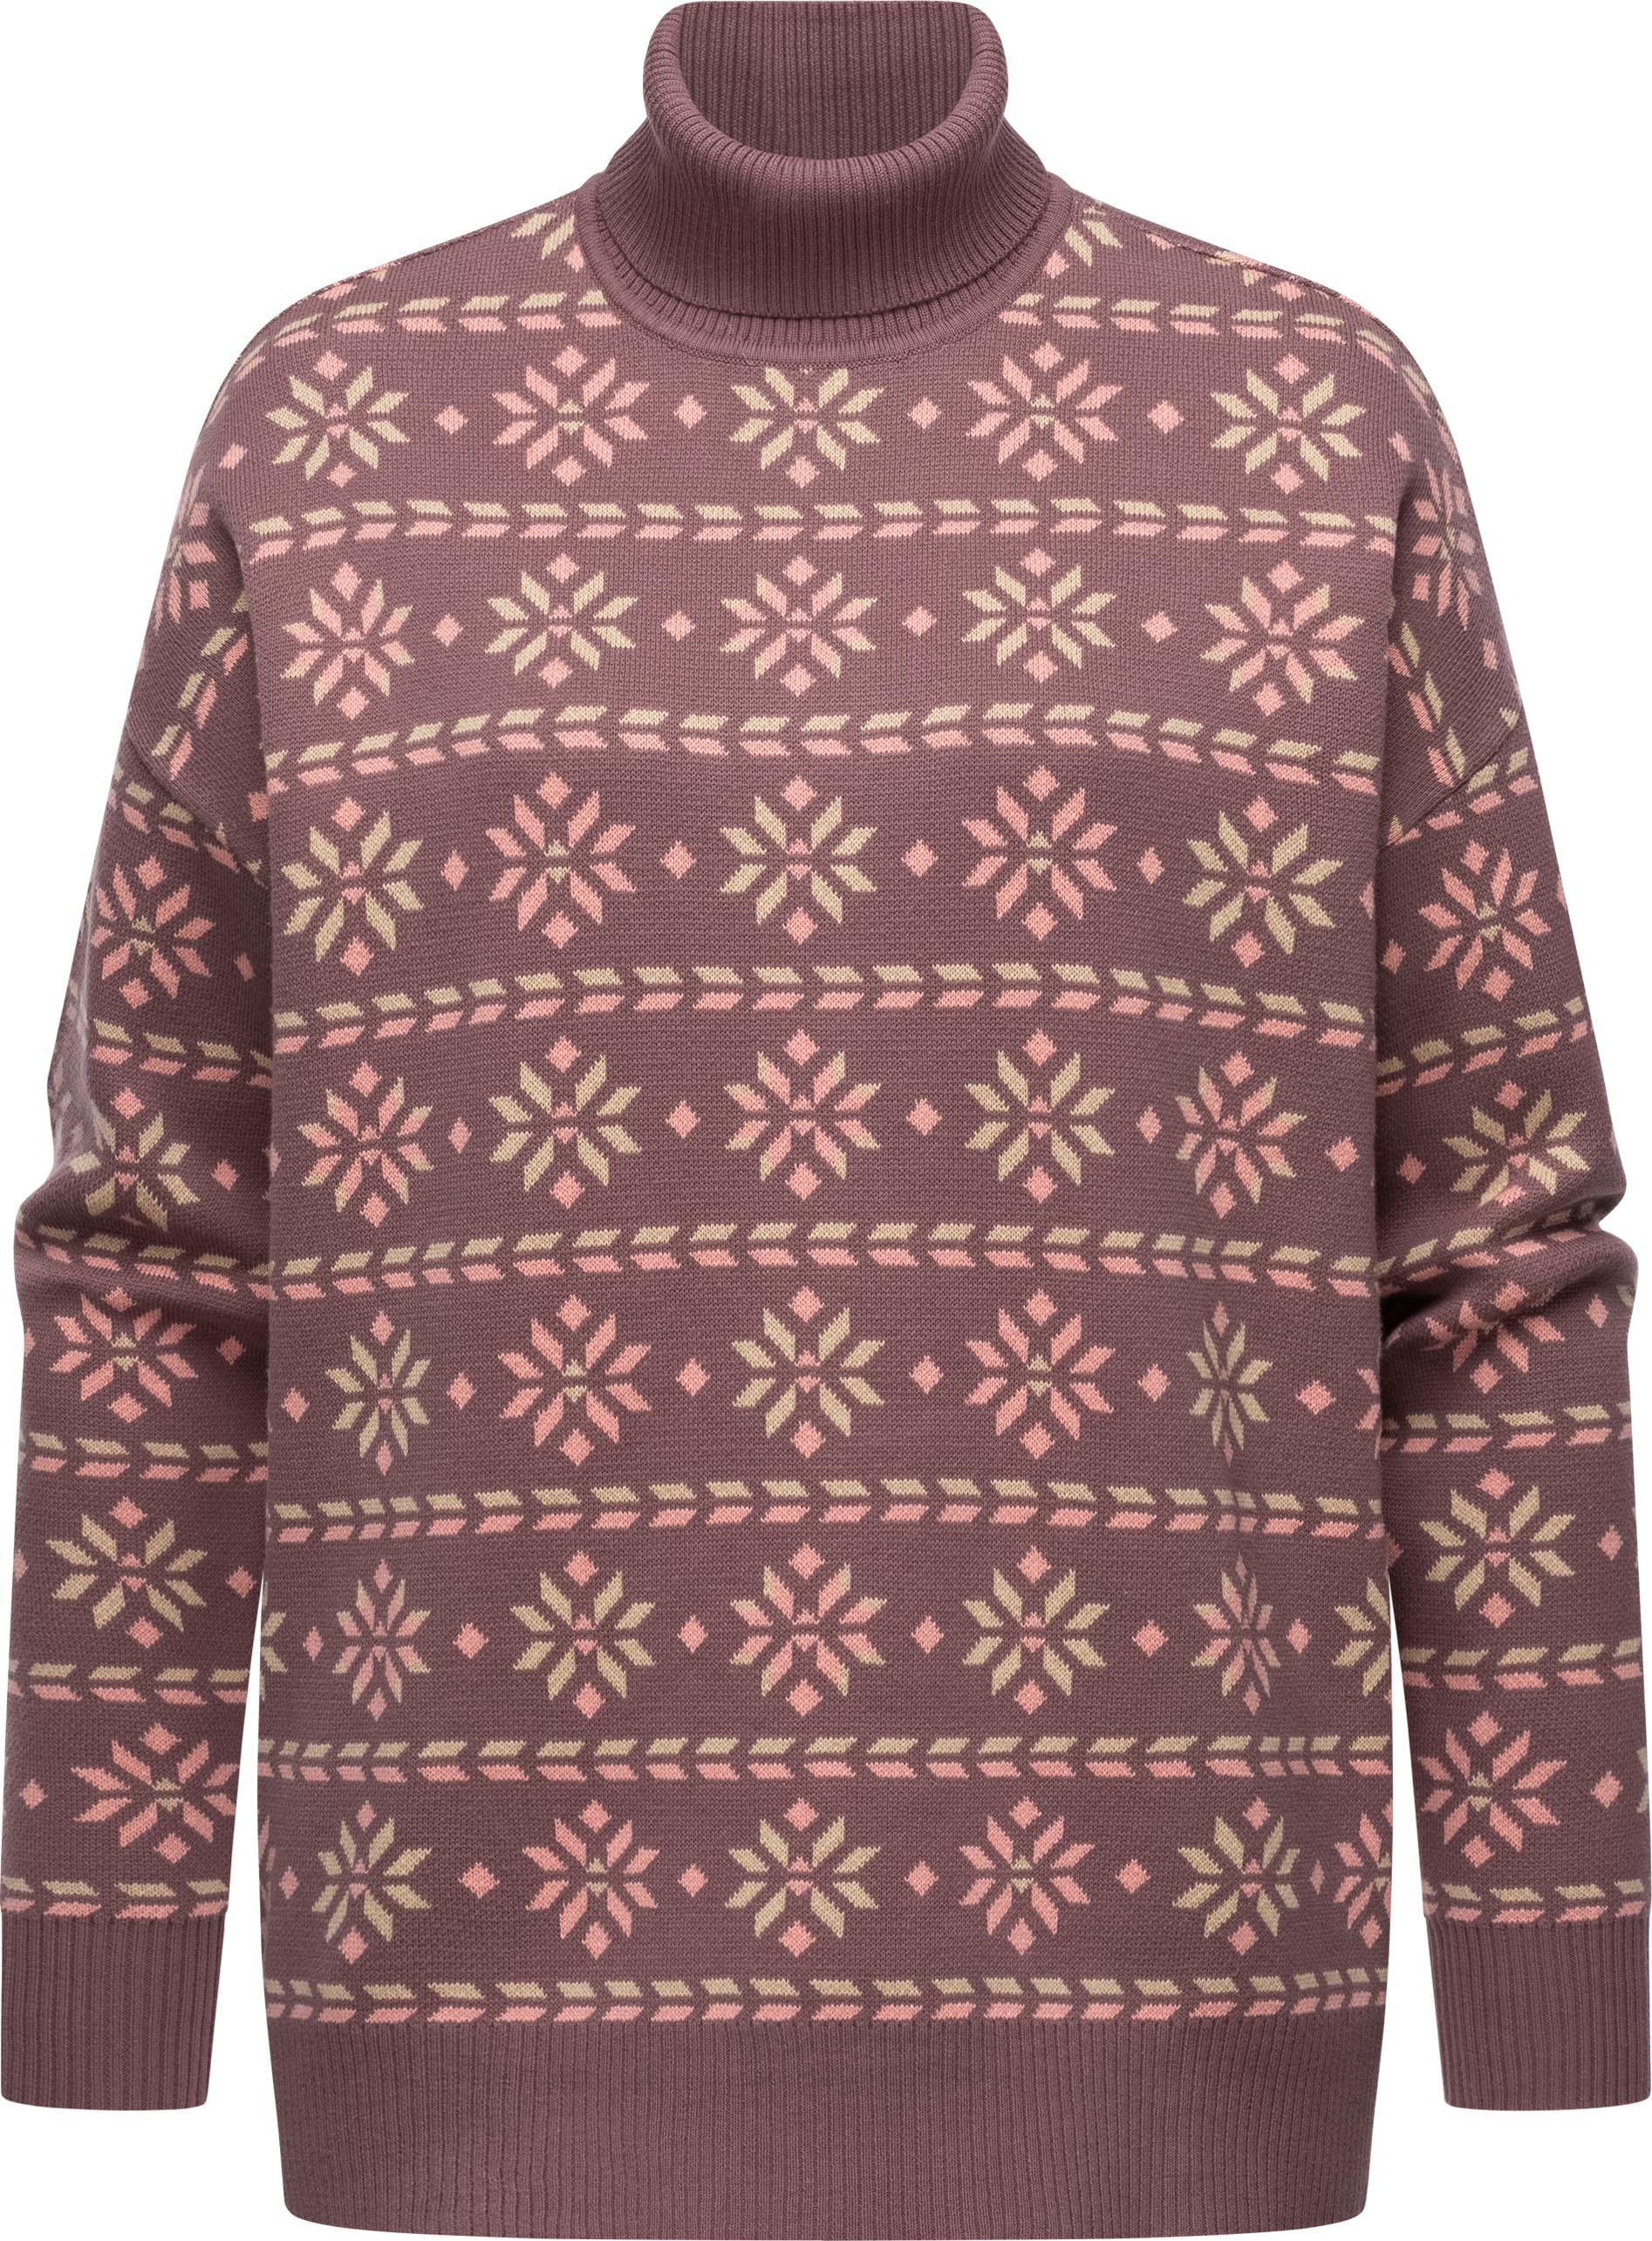 Stehkragenpullover »Danika Organic«, Damen Pullover mit winterlichem Muster-Print